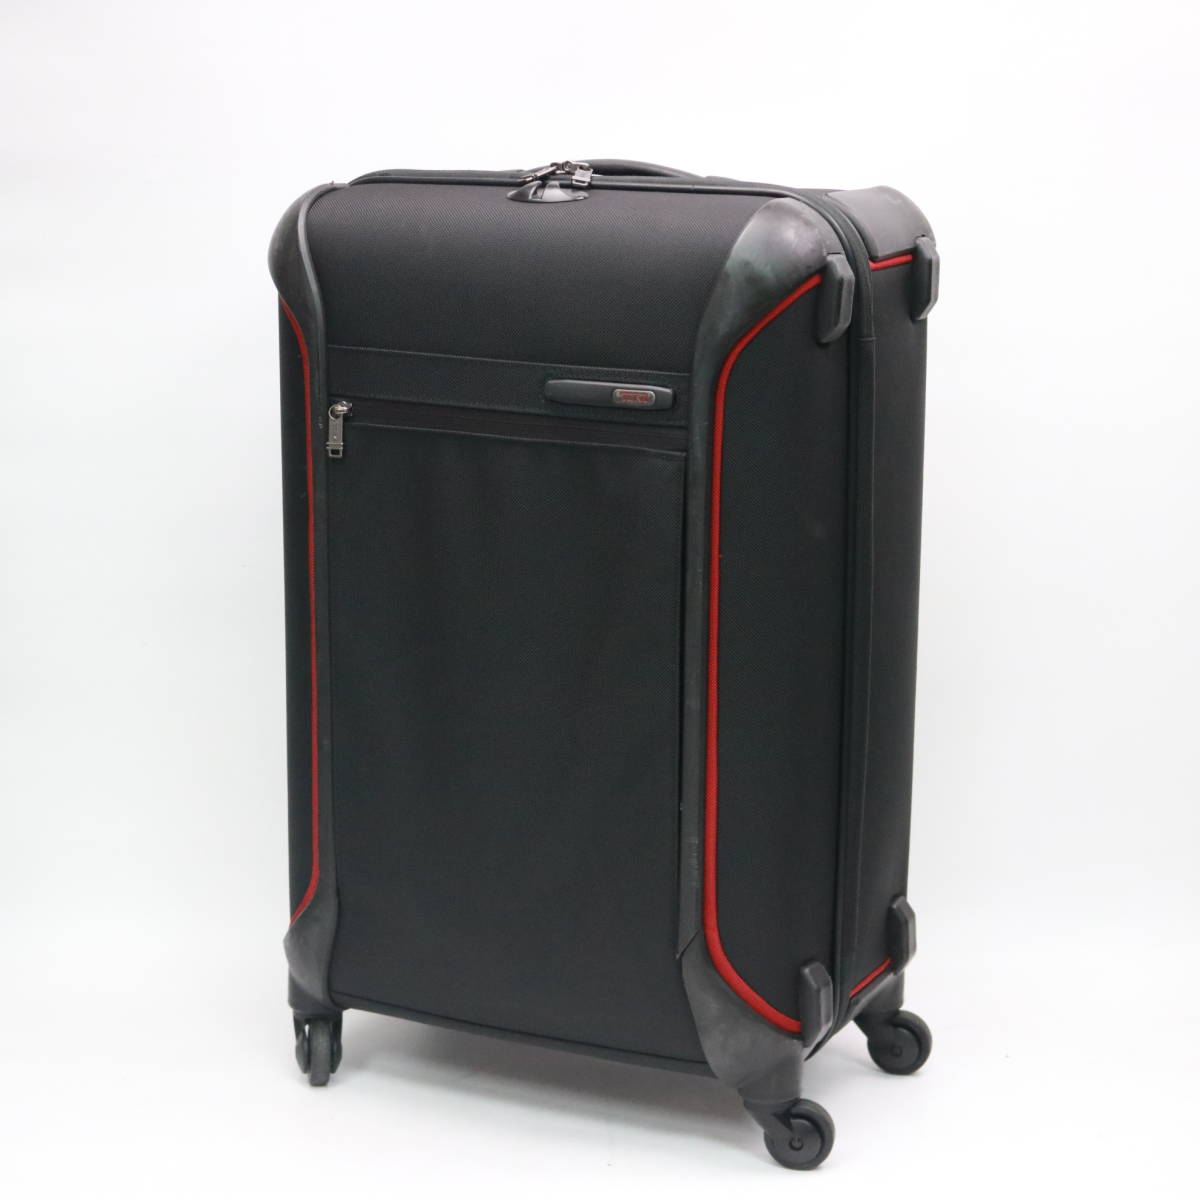 東京都品川区にて TUMI  スーツケース 283525DR4  を出張買取させて頂きました。